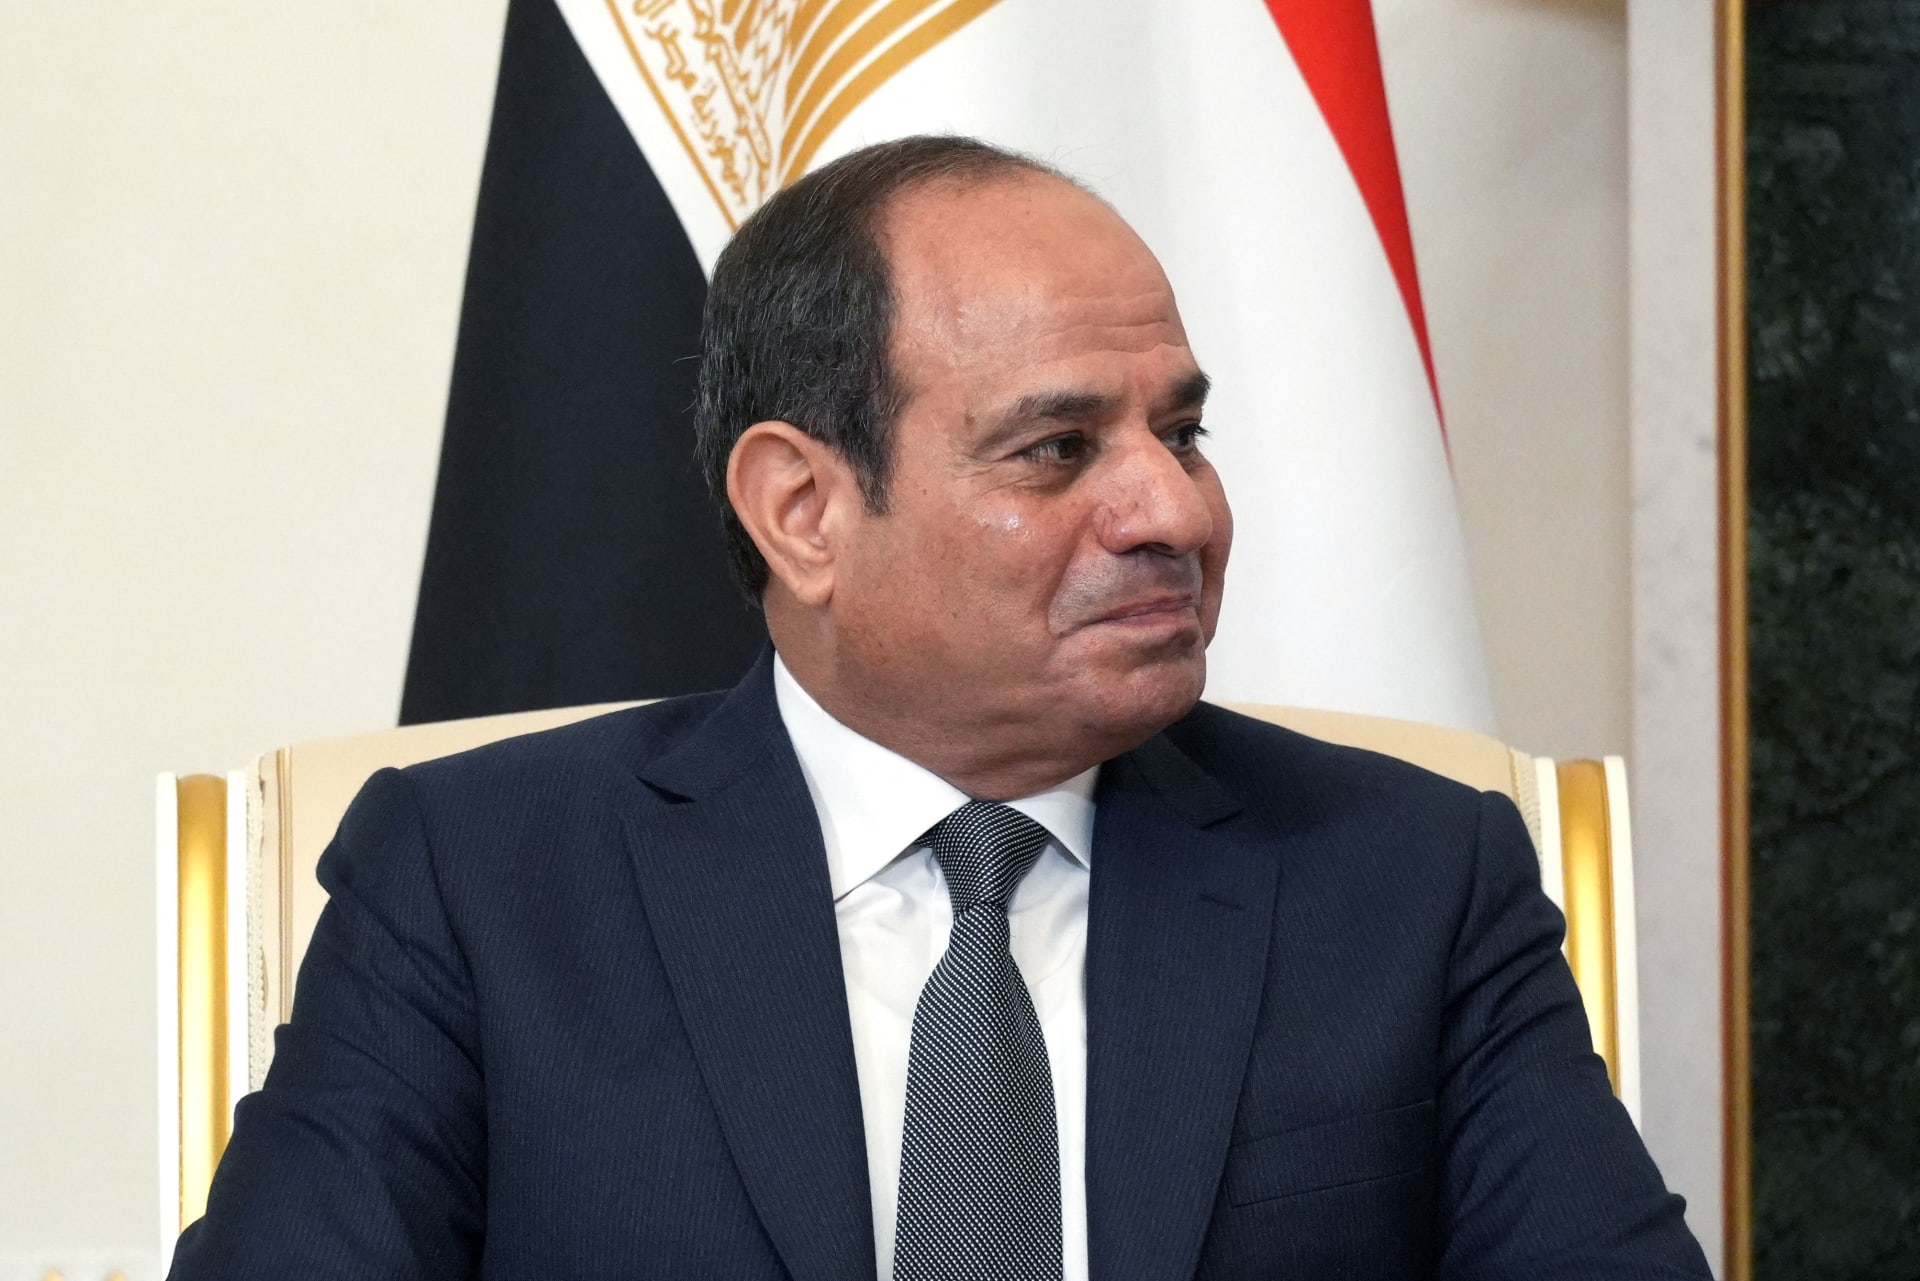 السيسي: يجب تنظيم "الحرية المطلقة" في الإنجاب لتقليل الزيادة السكانية.. وهذا هو المطلوب لتحقيق التغيير في مصر